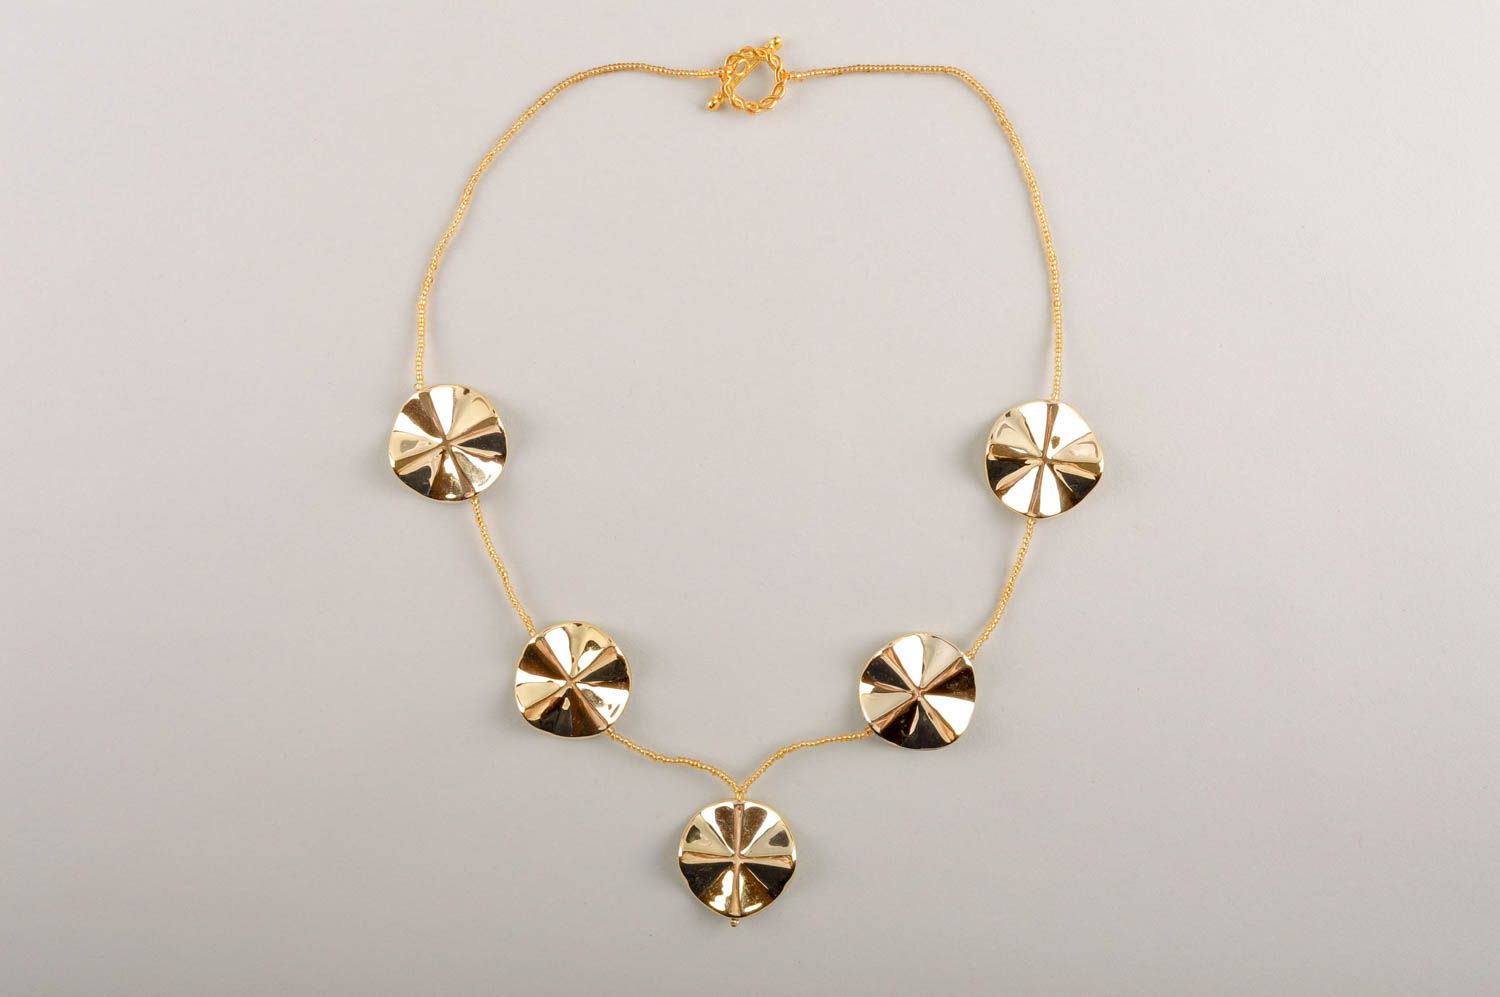 Handmade stylish accessory beautiful beaded necklace elegant necklace gift photo 2